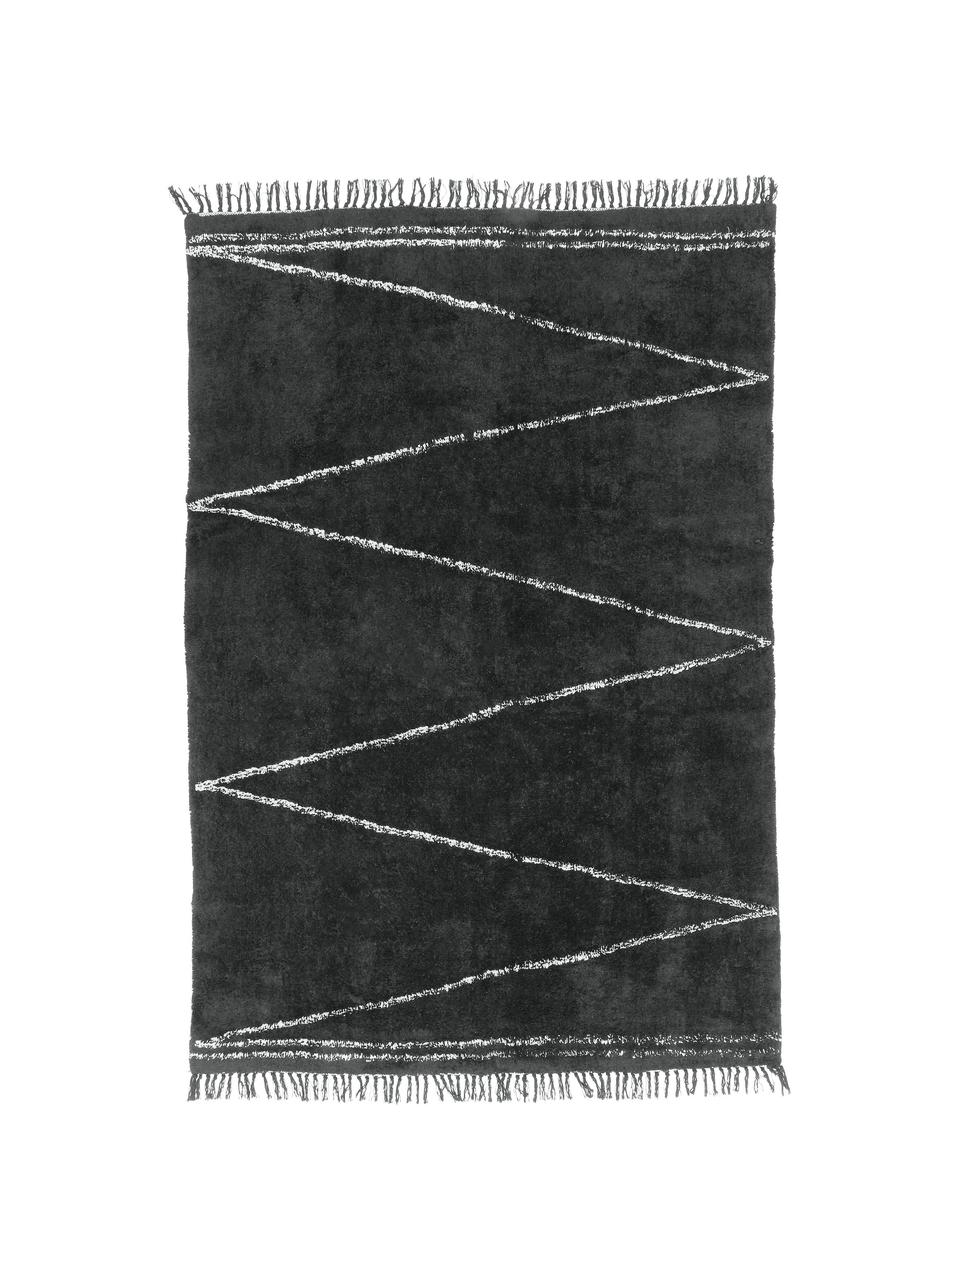 Handgetufteter Baumwollteppich Asisa mit Zickzack-Muster und Fransen, Anthrazit, B 200 x L 300 cm (Grösse L)